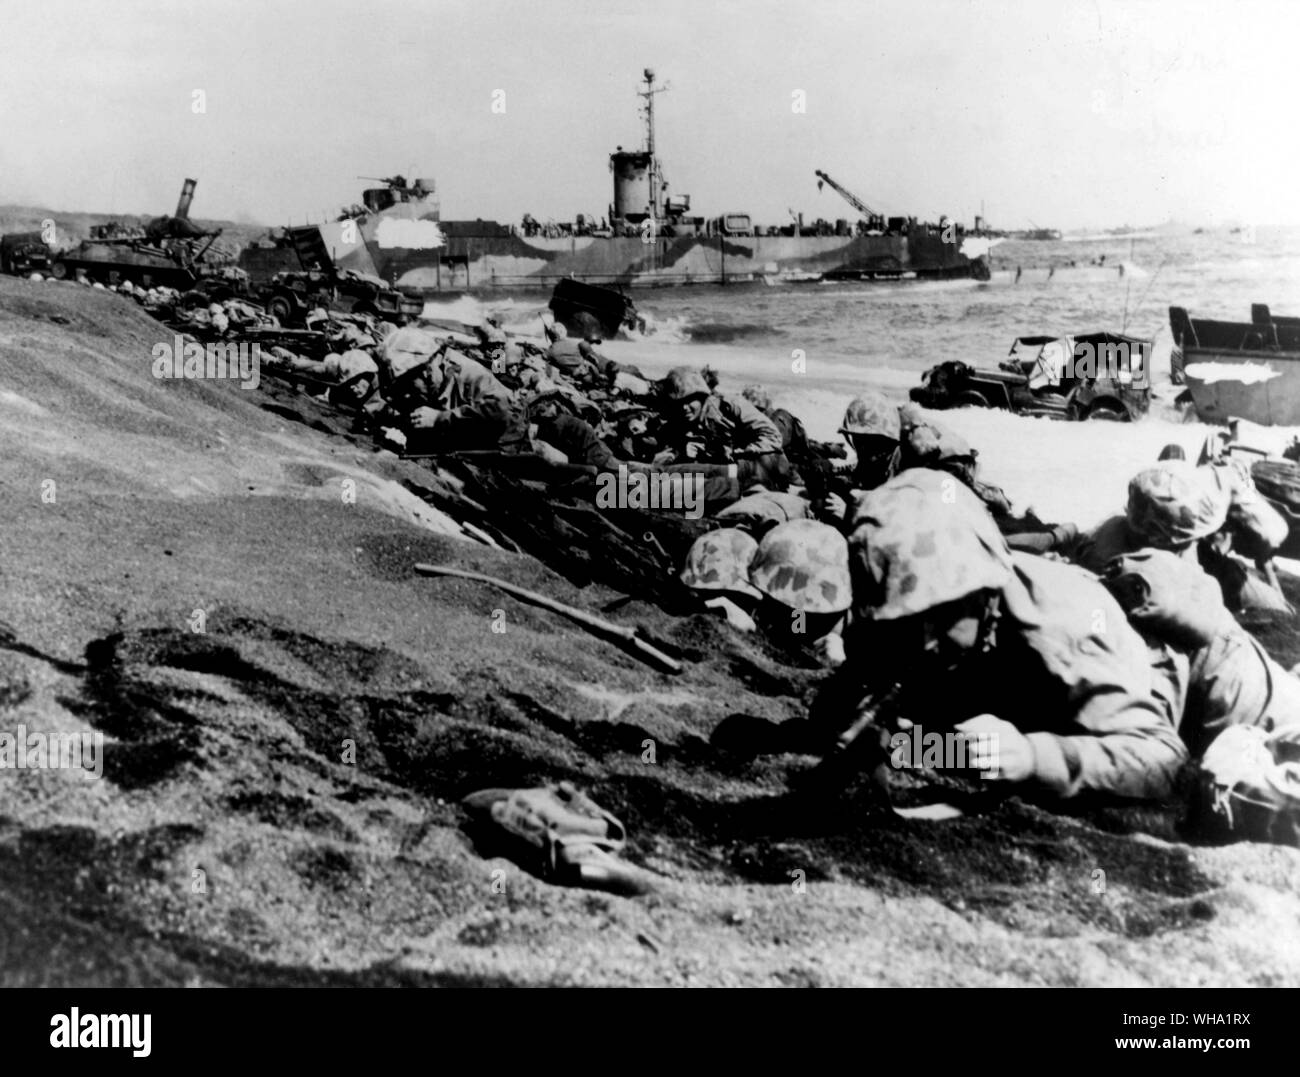 WW2 : Quatrième Division maritime déménagement haut de la plage d'Iwo Jima sur D-Day, 19 févr. 1945. Faisant leur quatrième assaut amphibie en 12 mois, l'ancien combattant combattants sont prêts à assurer le flanc droit de la première tête de plage. Une LSM est dans l'arrière-plan. Banque D'Images